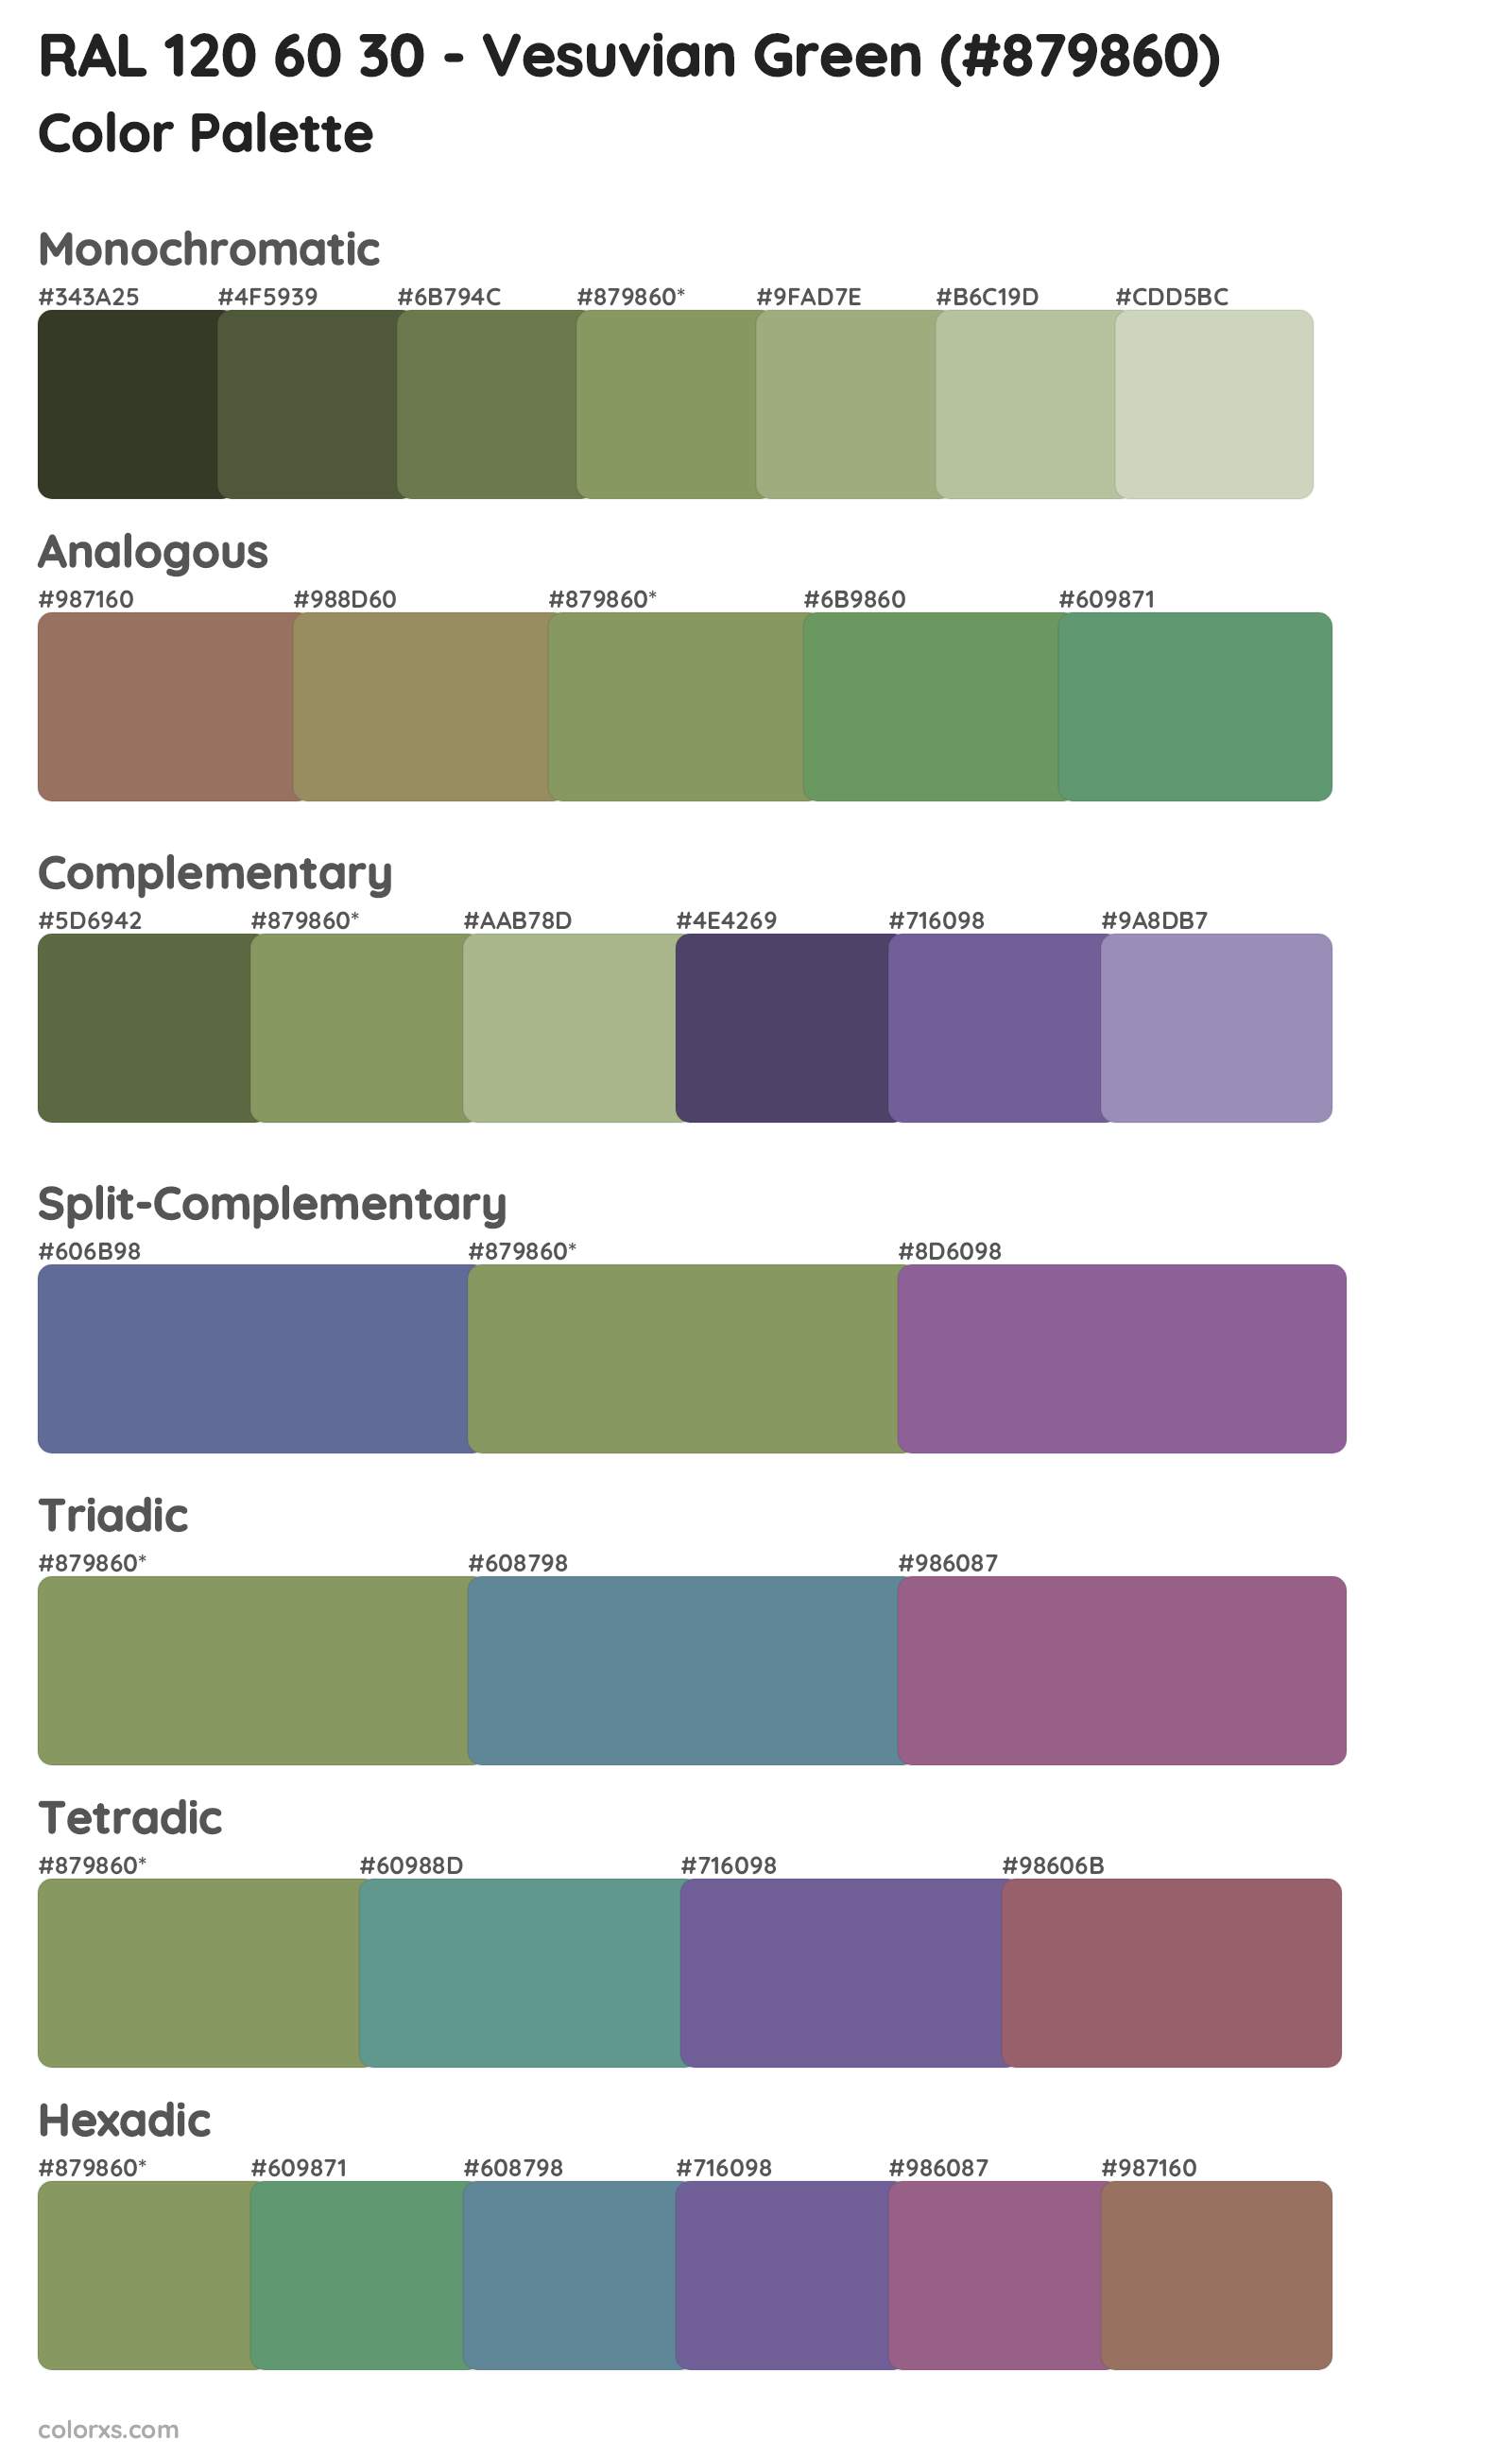 RAL 120 60 30 - Vesuvian Green Color Scheme Palettes